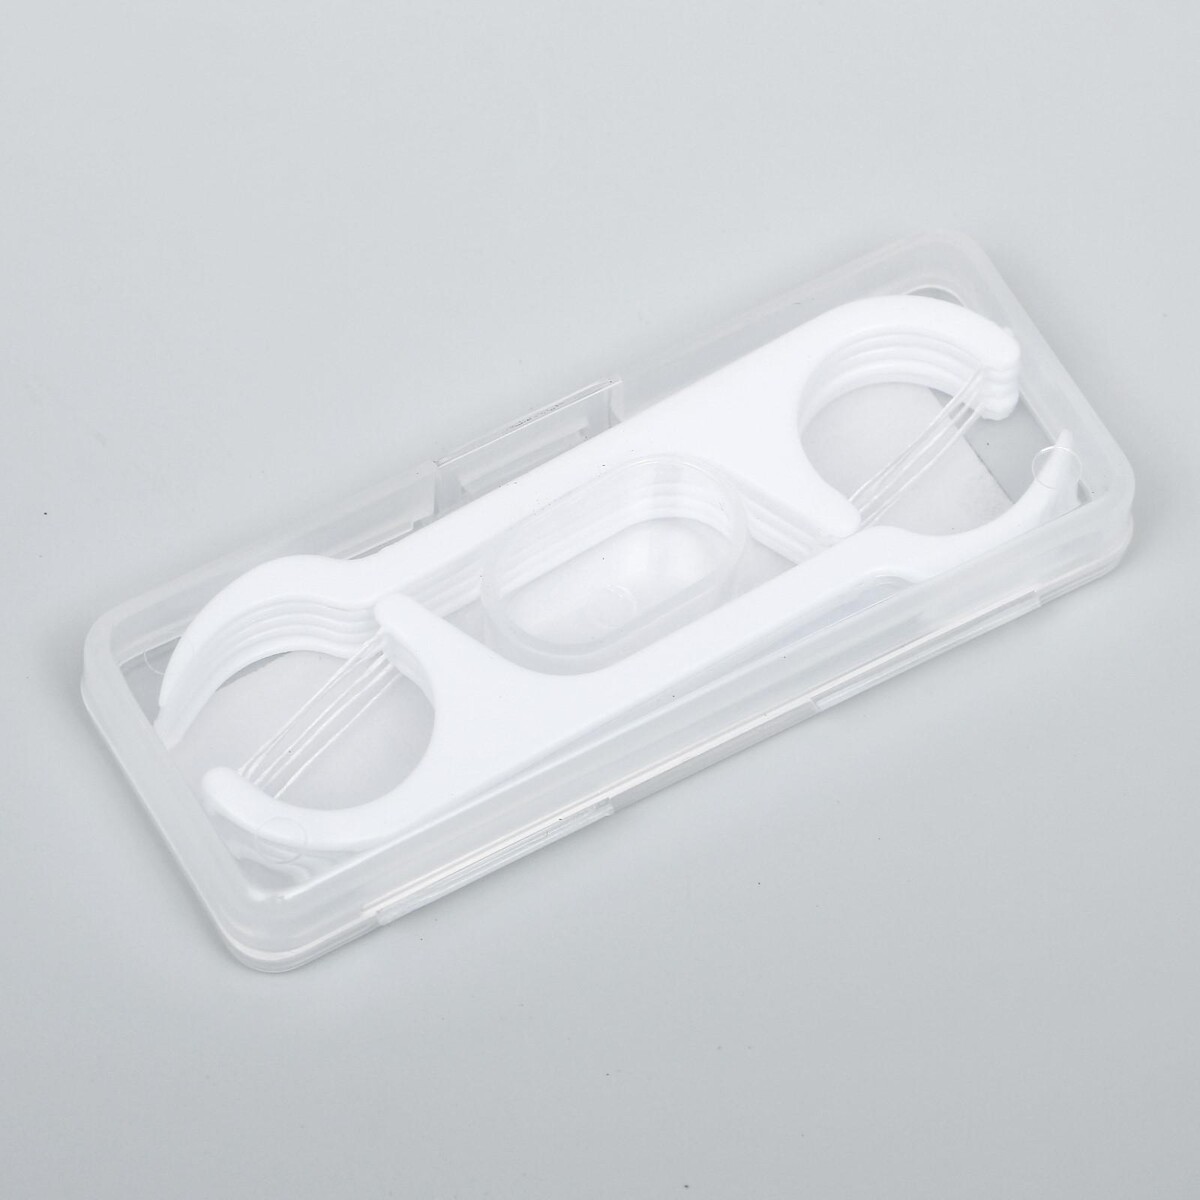 Зубная нить в пластиковом держателе, набор 10шт зубная нить в пластиковом держателе индивидуальная упаковка набор 50 шт